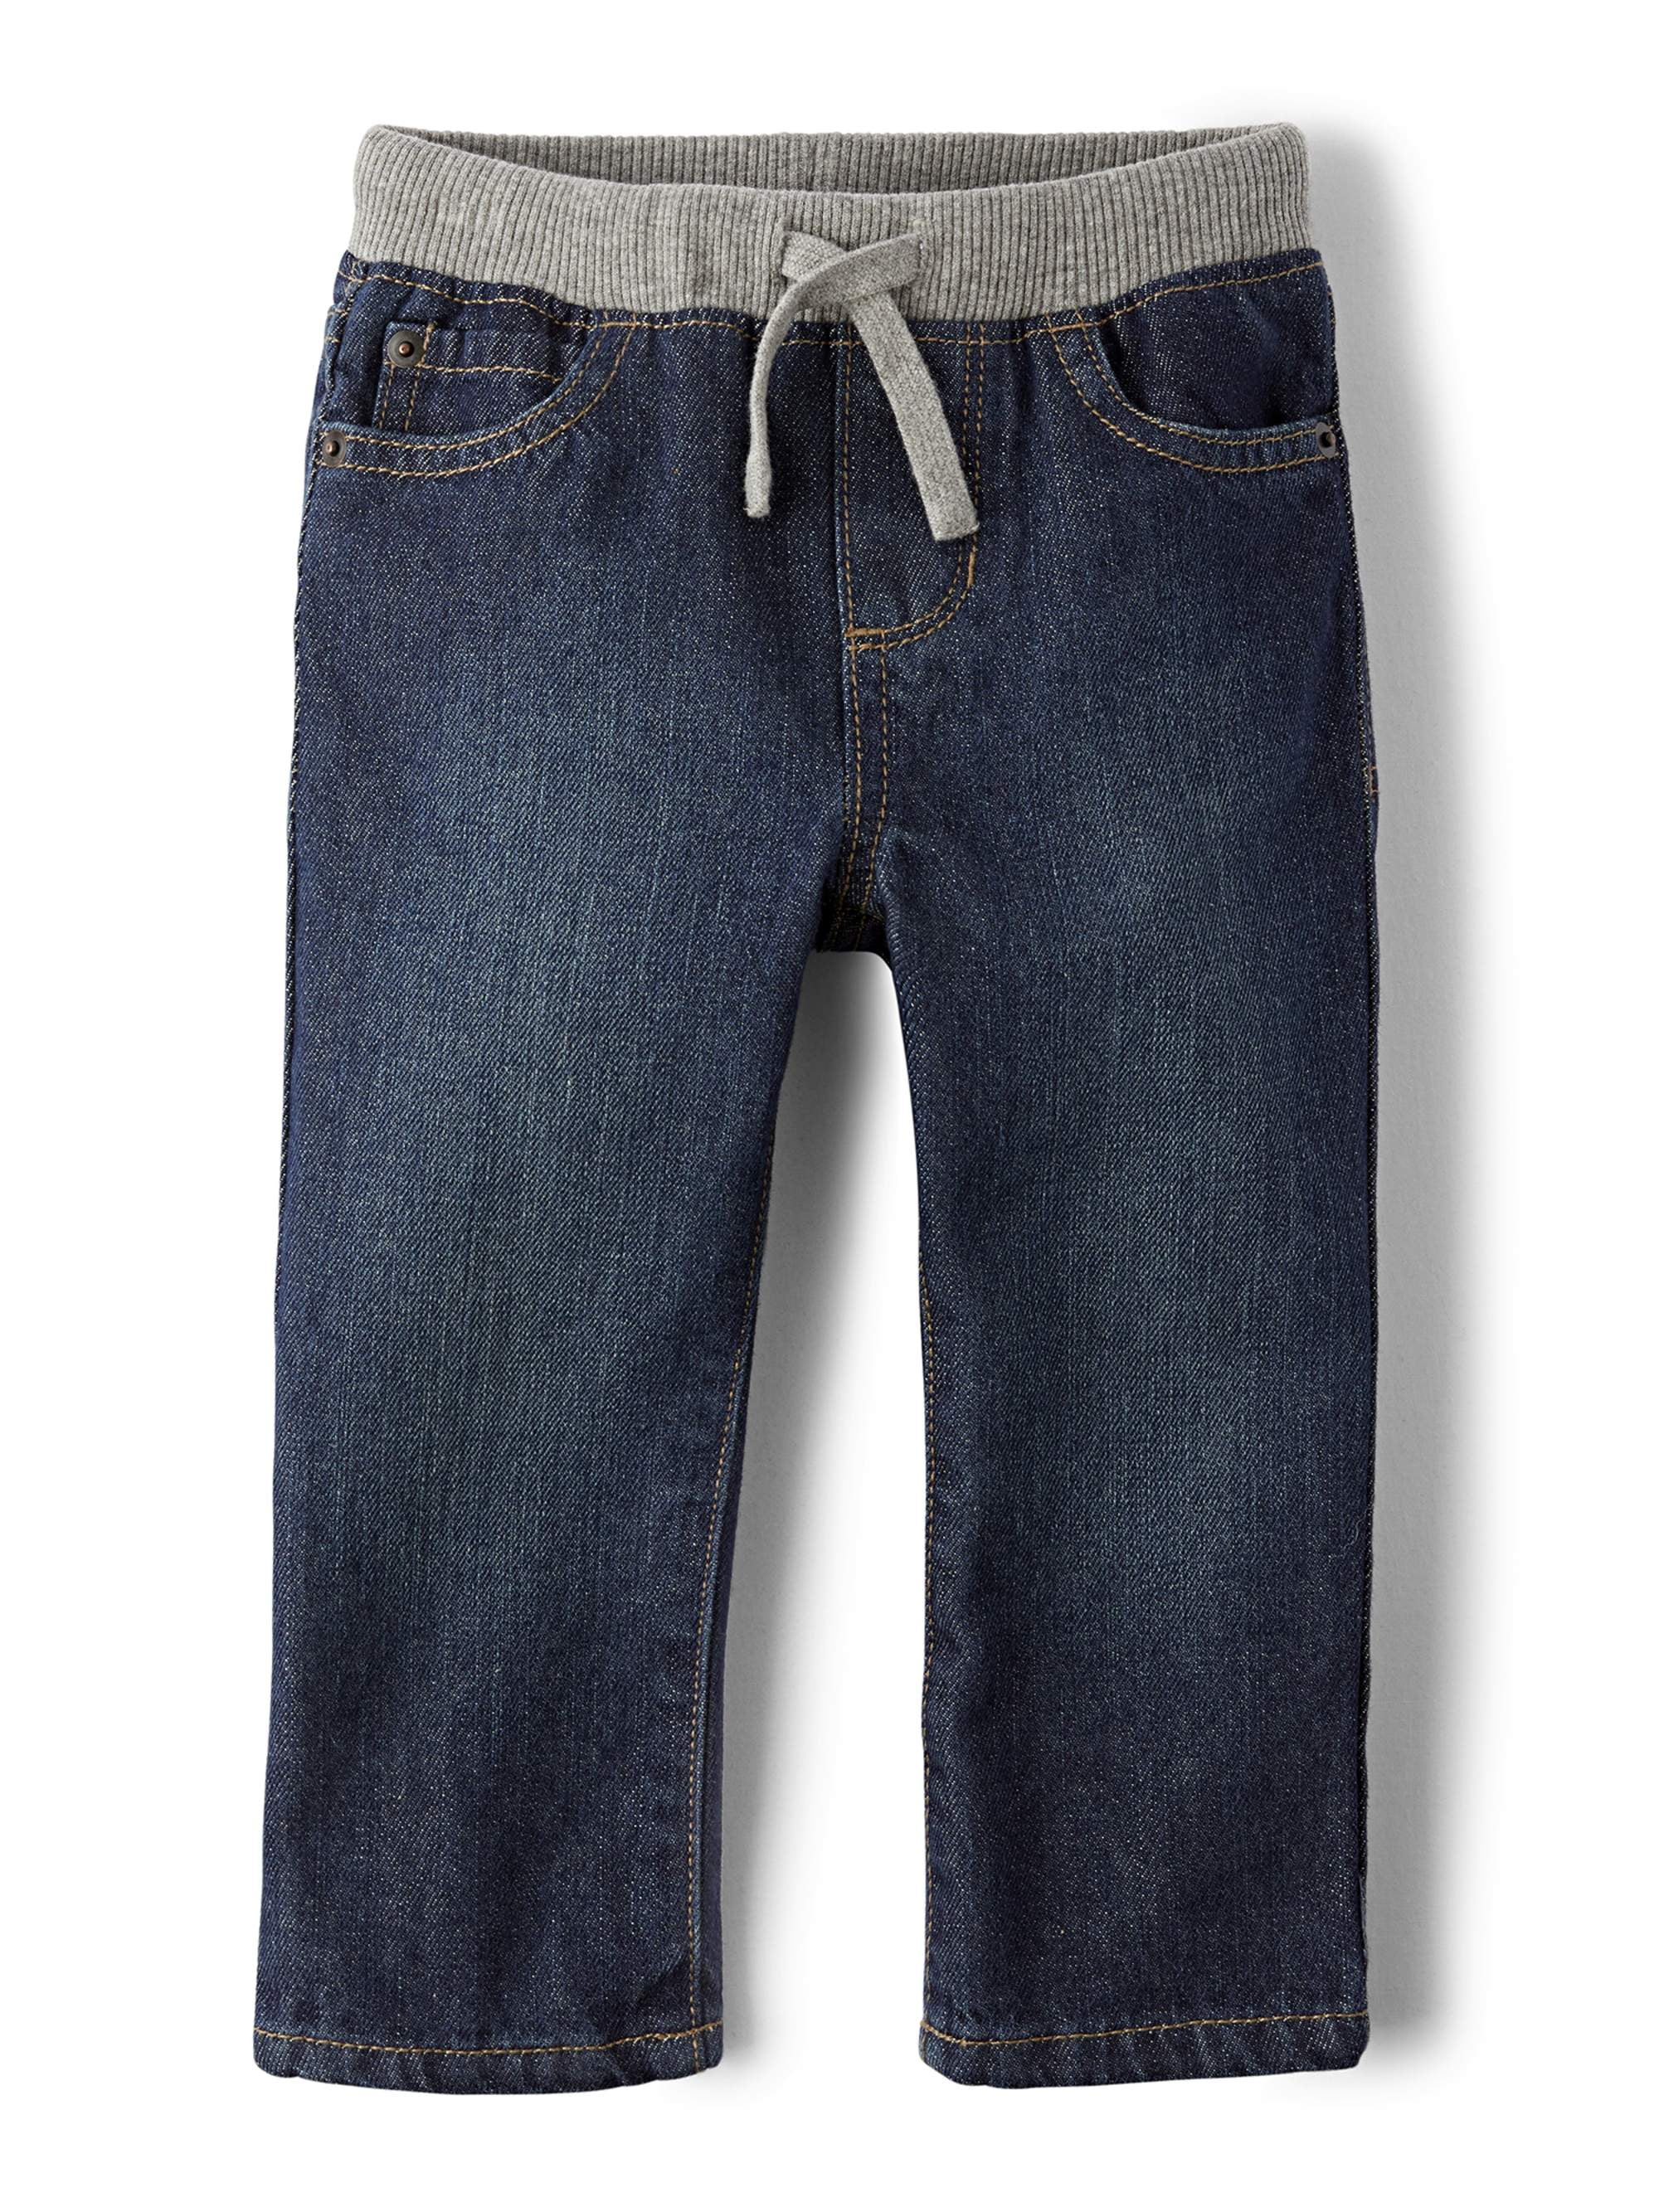 Gymboree Elastic Waist Dark Wash Blue Denim Jeans NEW NWT 